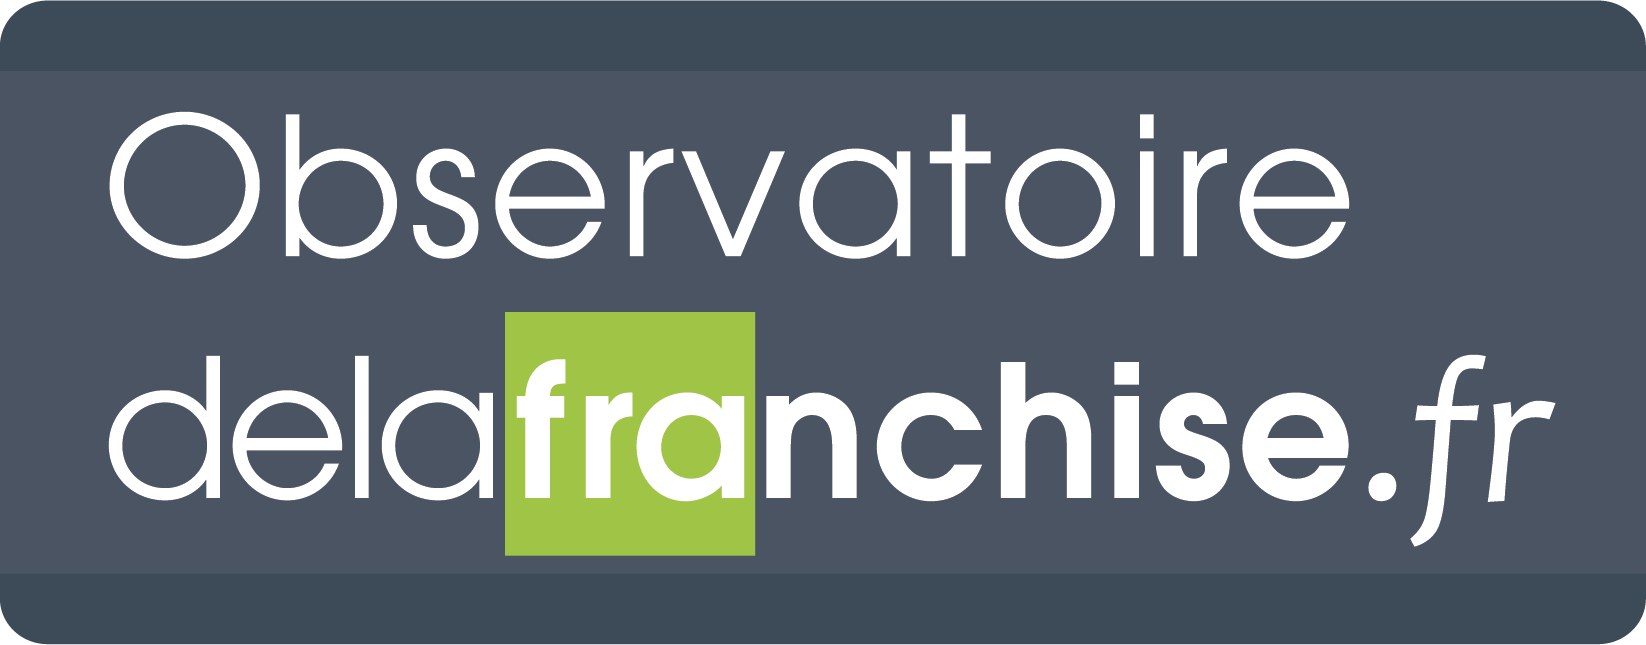 franchise observatory